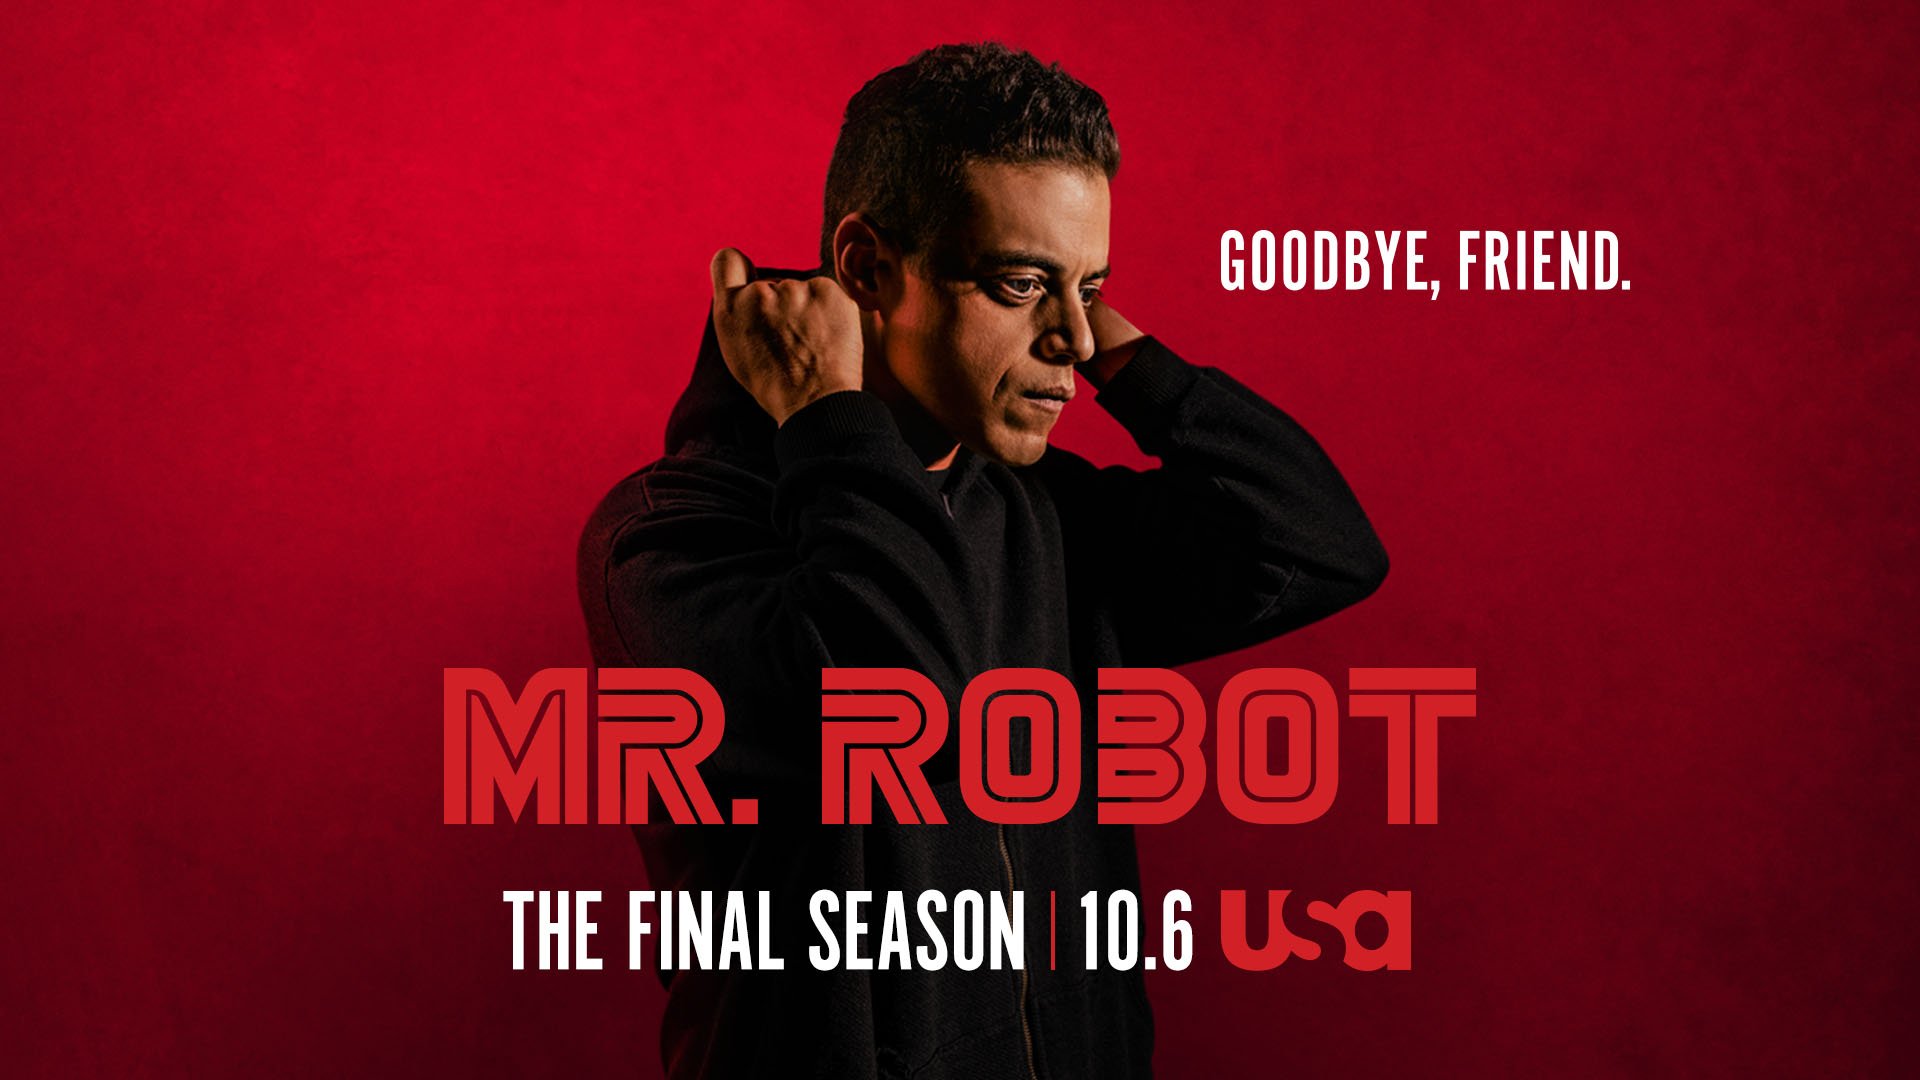 season_4.0, Mr. Robot Wiki